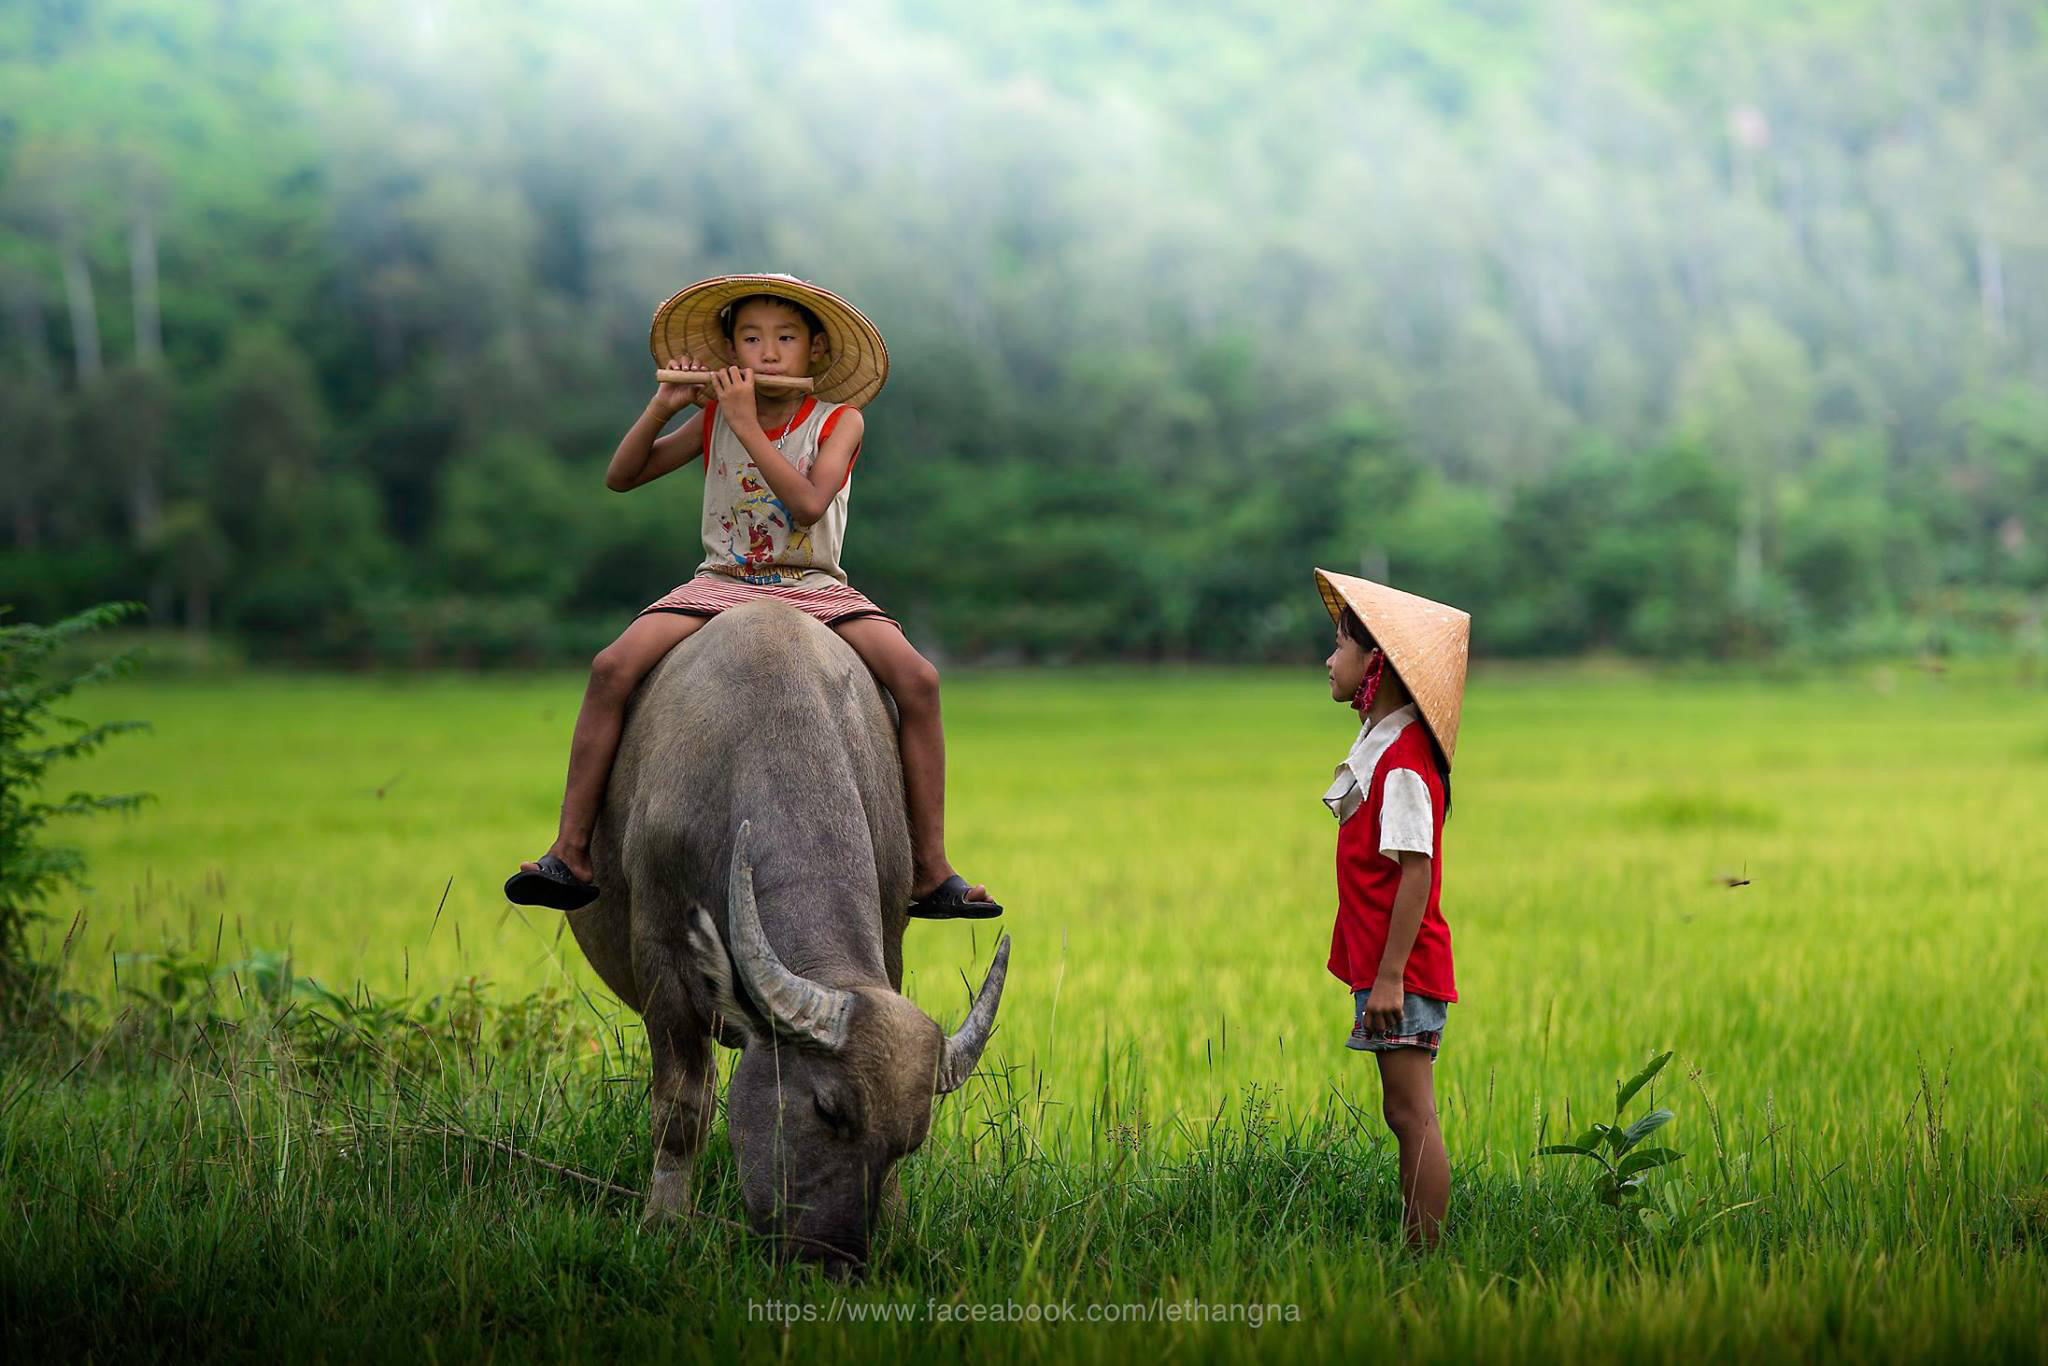 Nhanh tay tải về những hình ảnh làng quê Việt Nam với nét đẹp bình dị